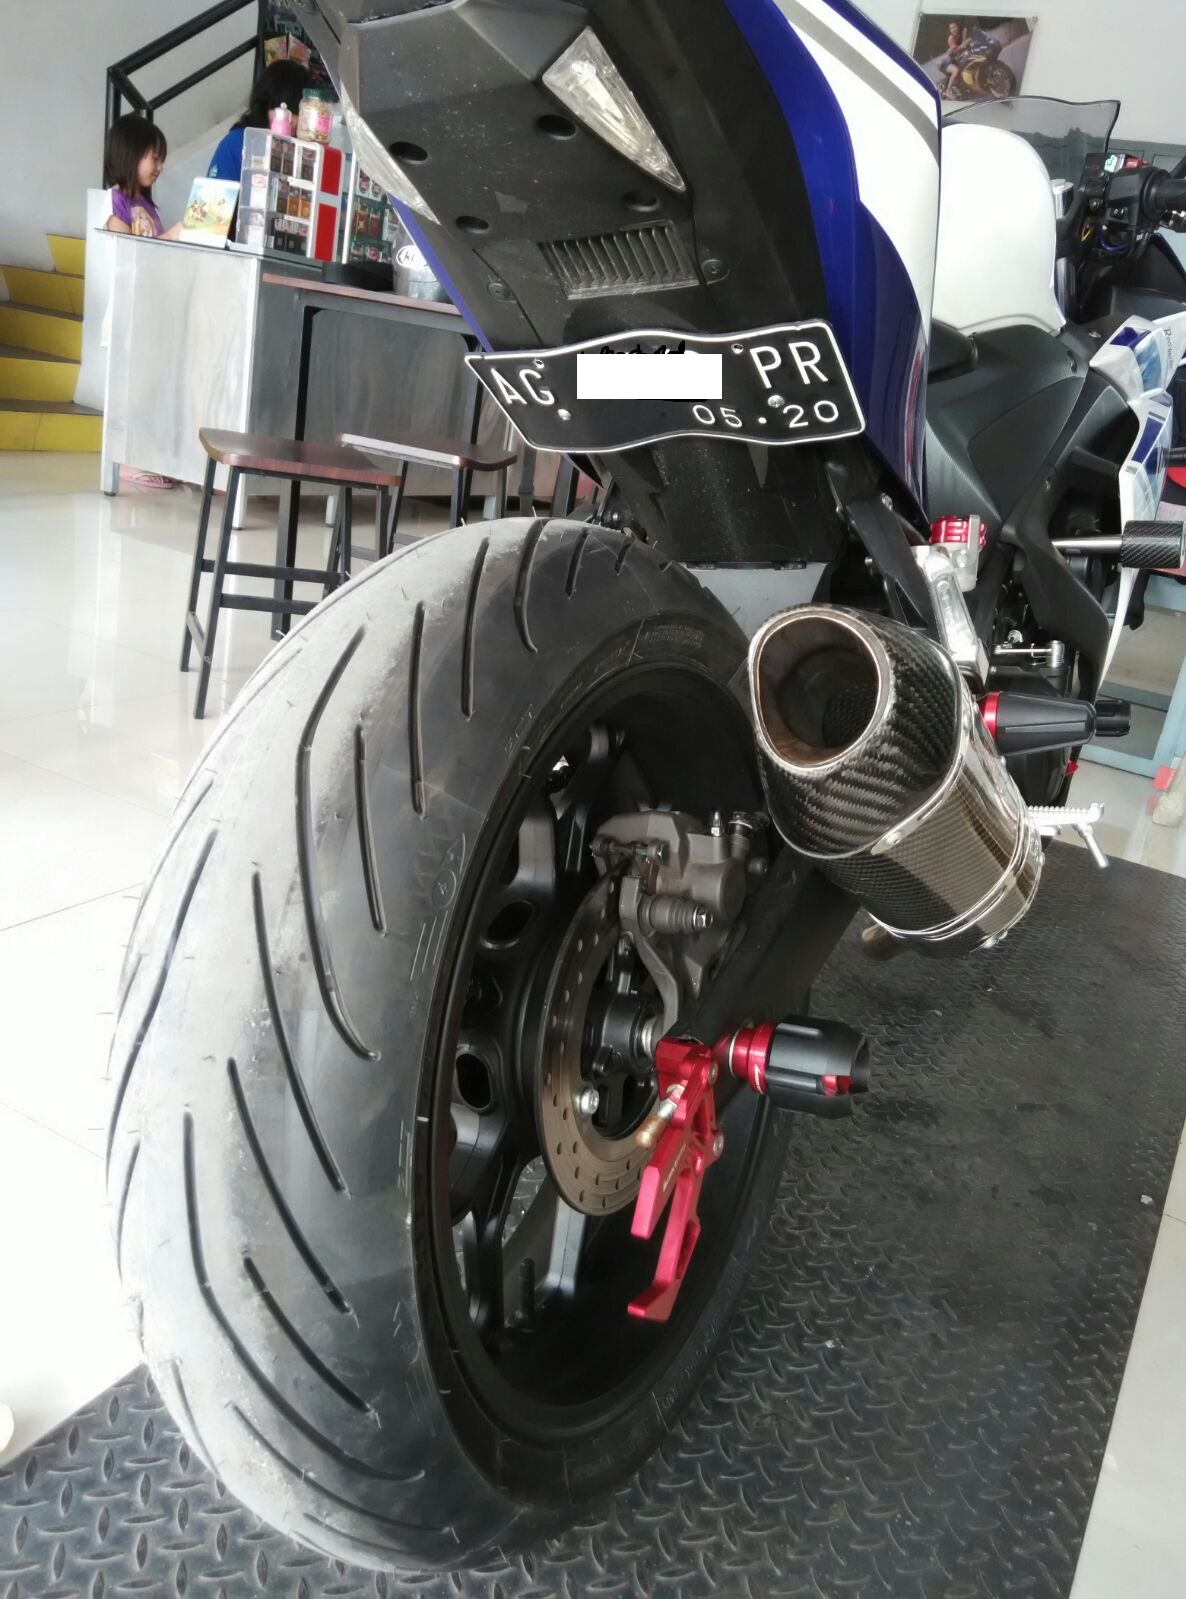 Motor Sport 250 CC Harian Yamaha R25 Pakai Knalport Racing Plus Ecu